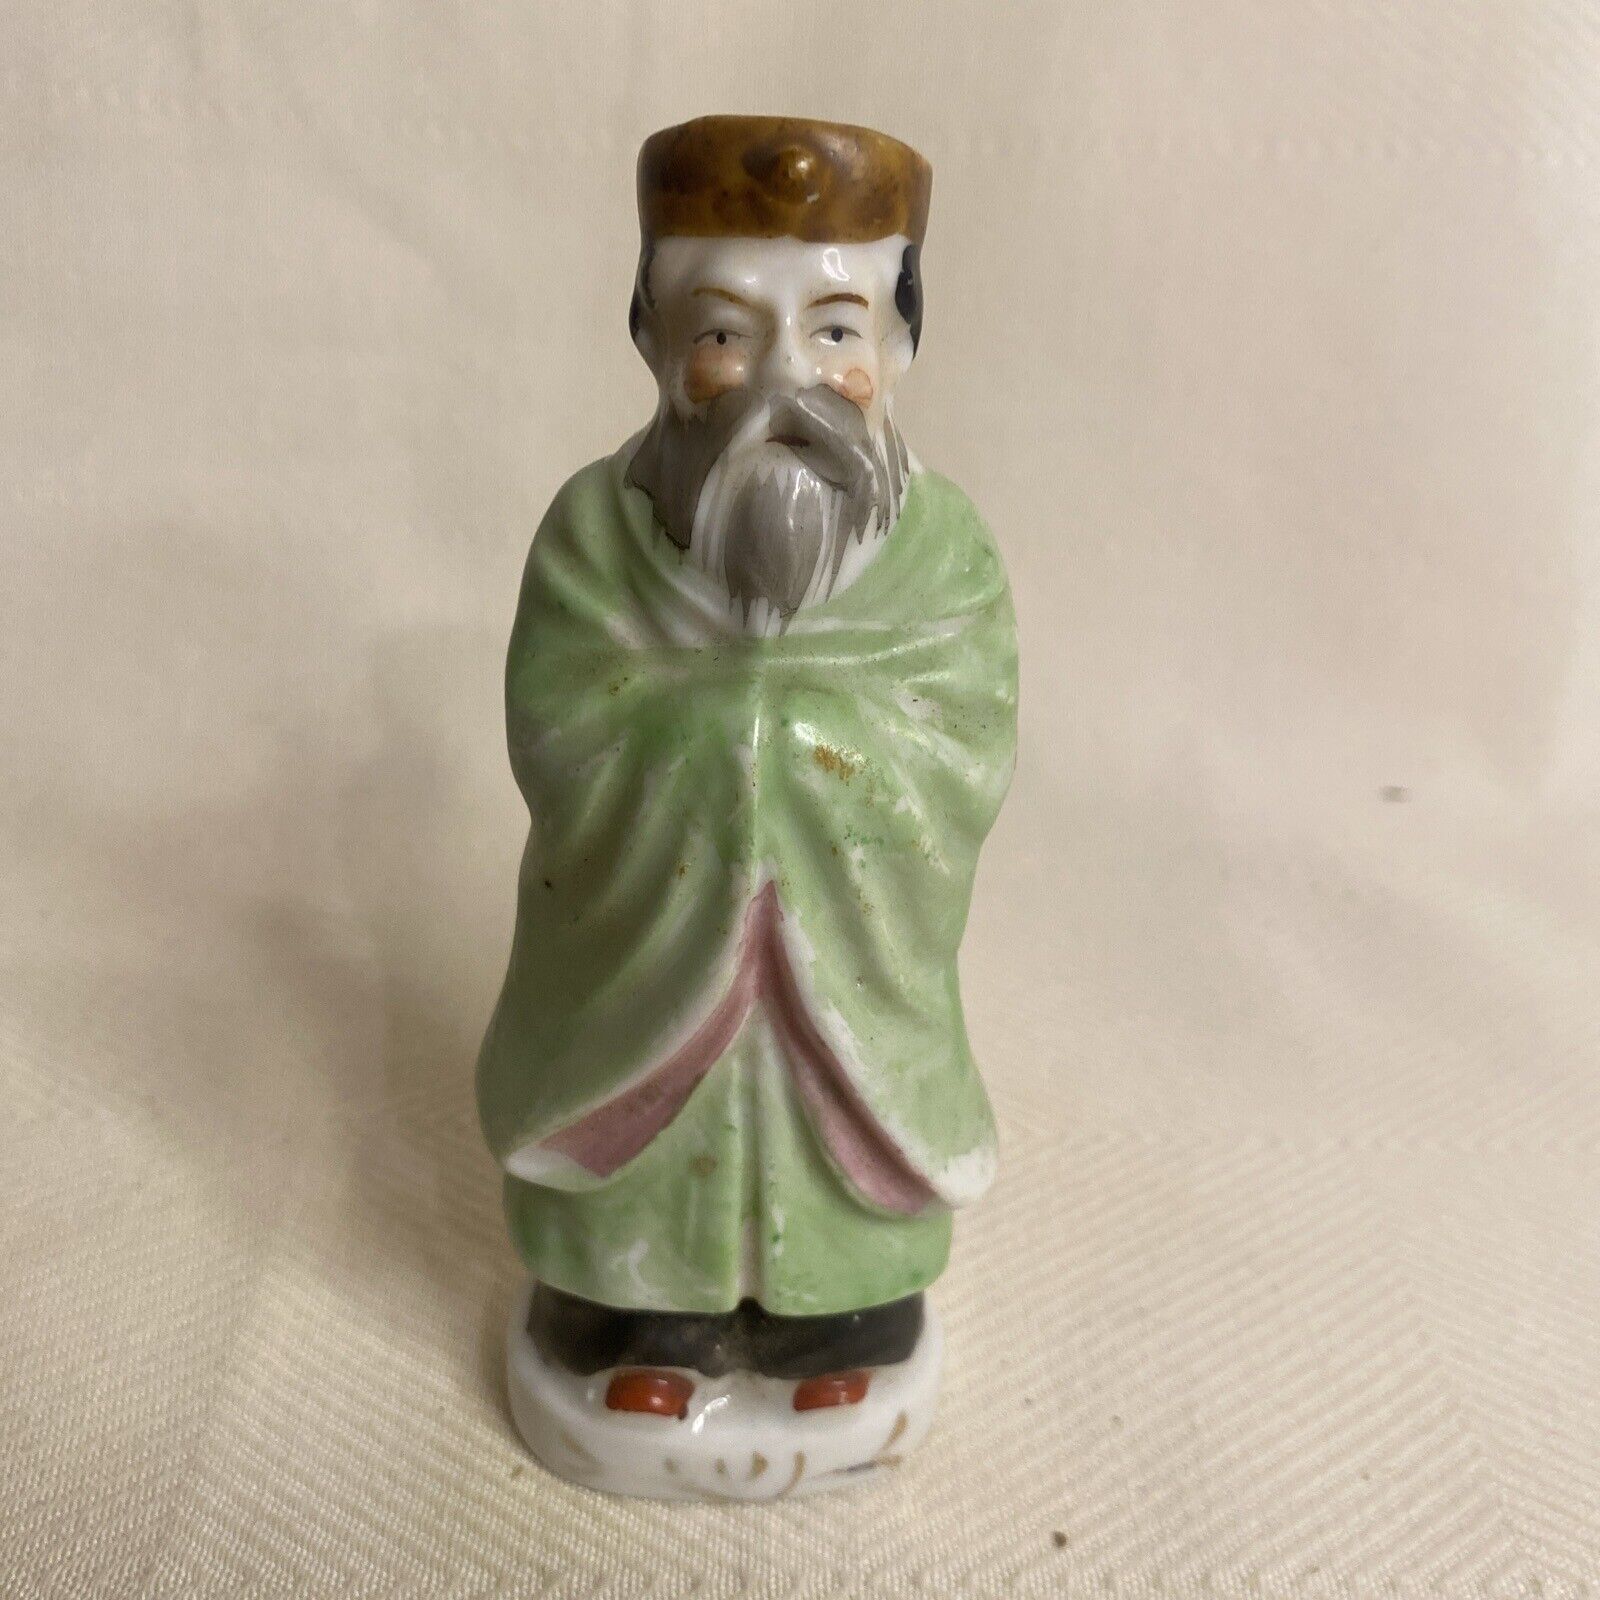 Vintage Asian Man Figurine Porcelain Japan Green Coat Figure